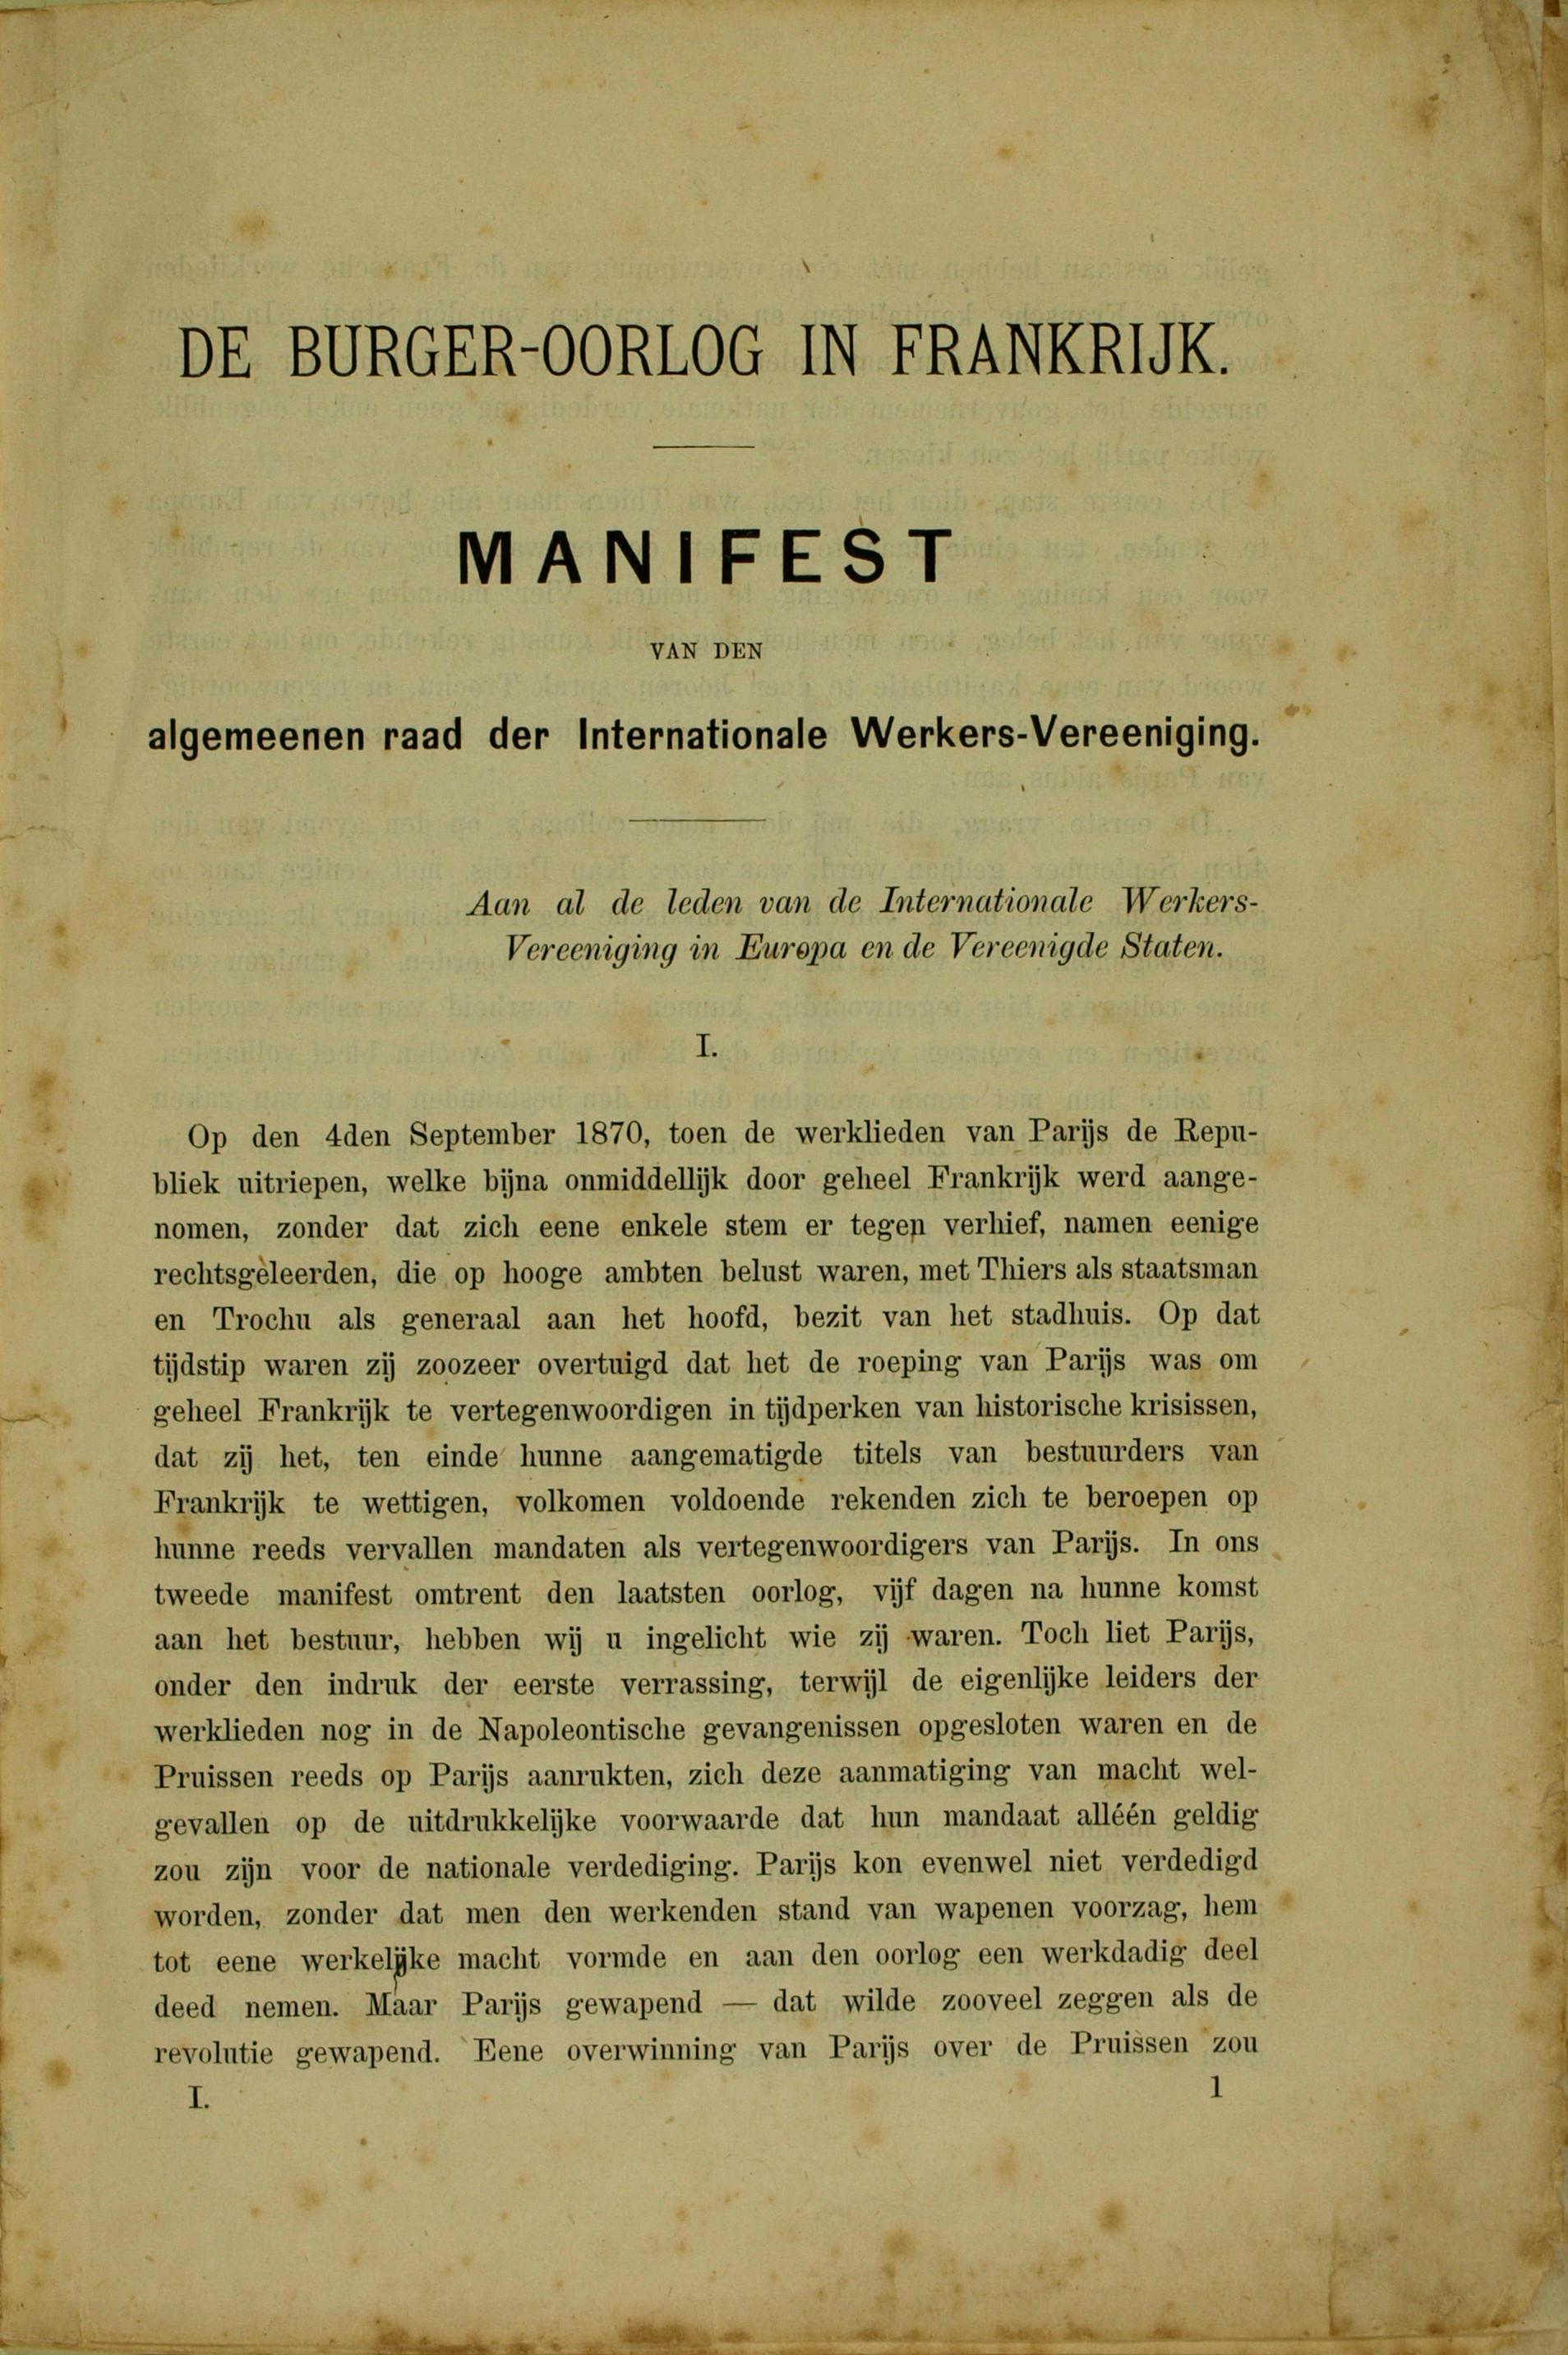 الصفحة النصية الأولى لـ [ماركس، كارل] (1871) – الحرب الأهلية في فرنسا. بيان المجلس العام لرابطة العمال الدولية، أرشيف رابطة العمال الدولية.